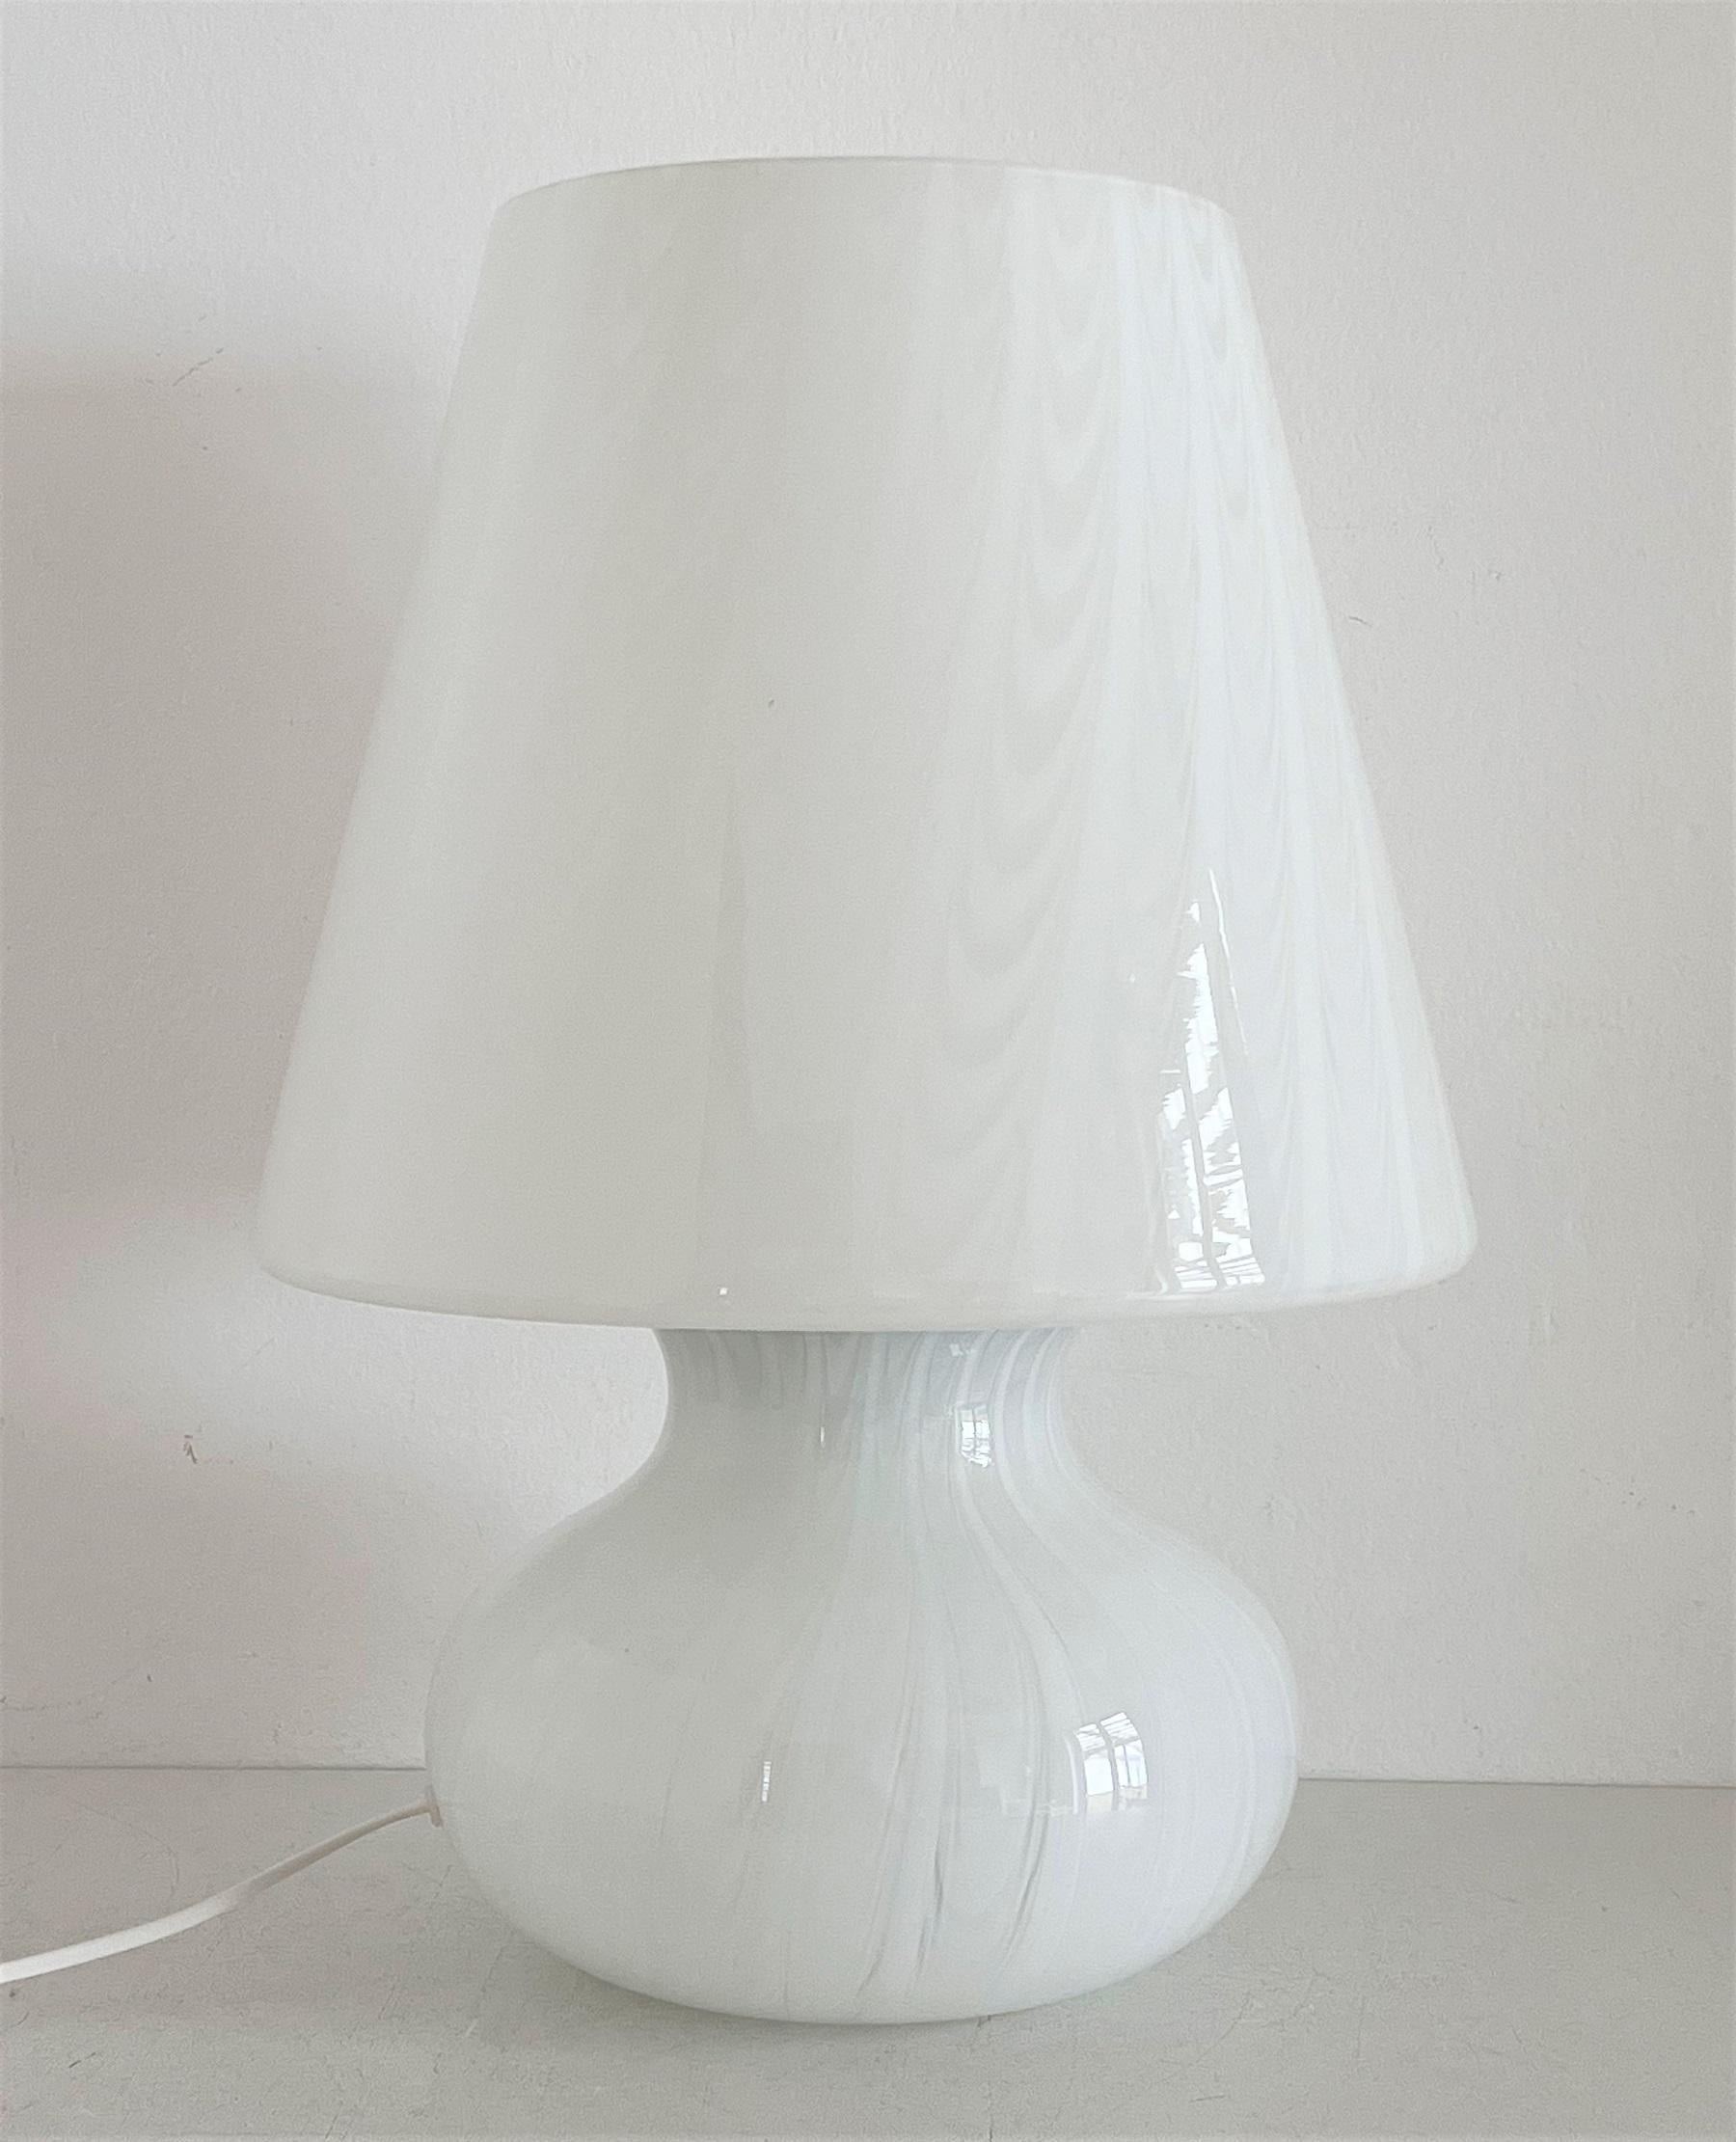 Wunderschöne und große Tischlampe in Form eines Pilzes aus wunderschönem glänzendem weißem Muranoglas mit weißem Wirbel und Wellen im Inneren des Glases.
Hergestellt in Italien, Murano, in den 1970er Jahren.
Die Lampe wird in Murano handgefertigt;